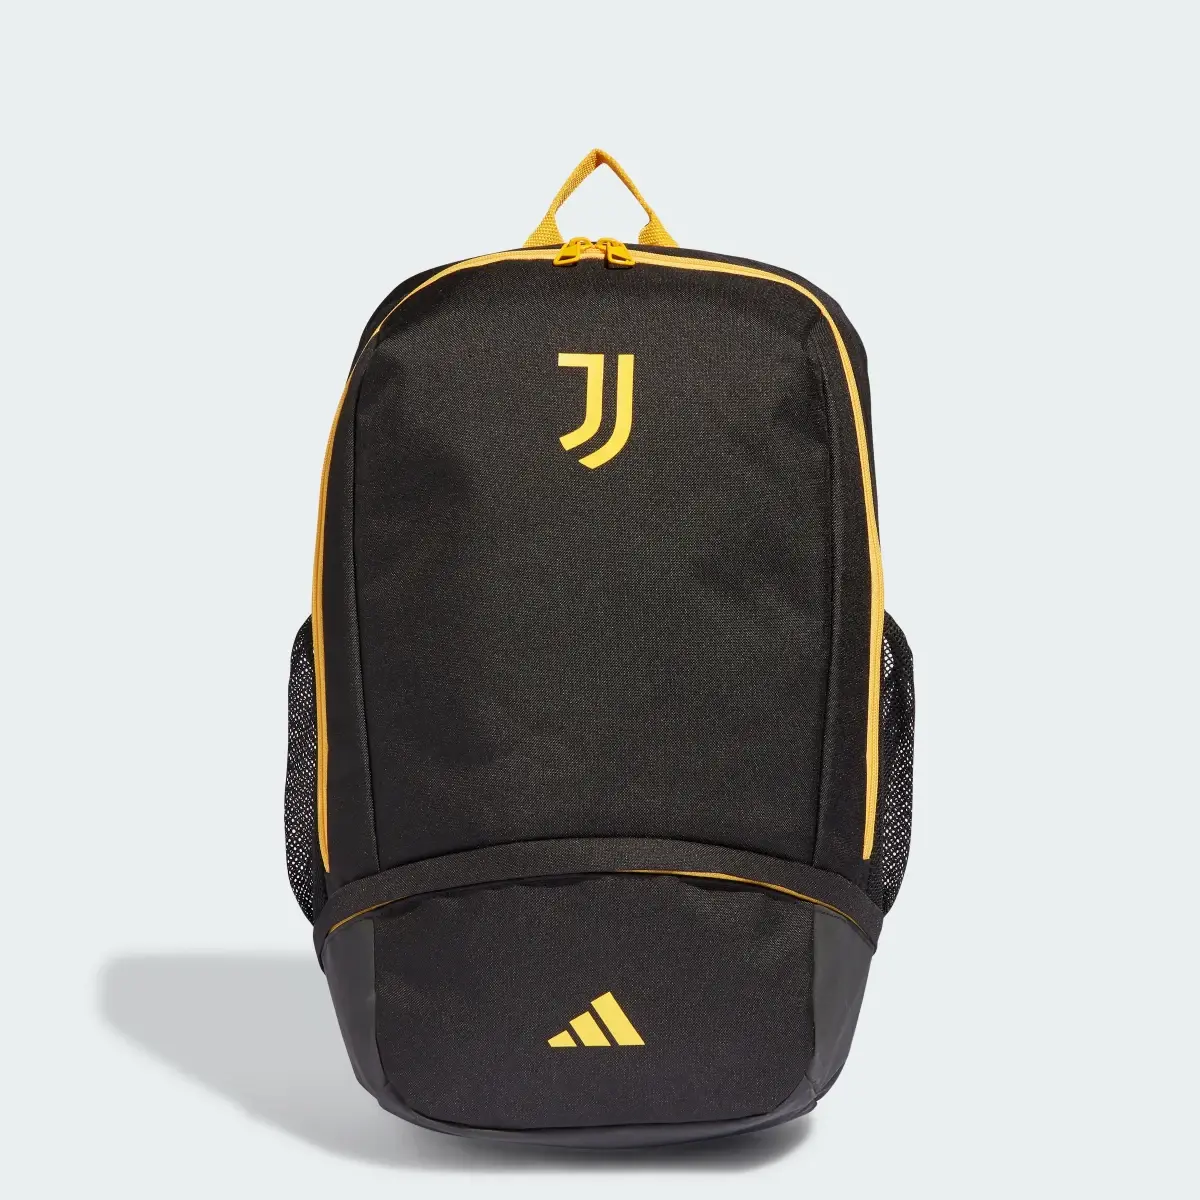 Adidas Juventus Backpack. 1